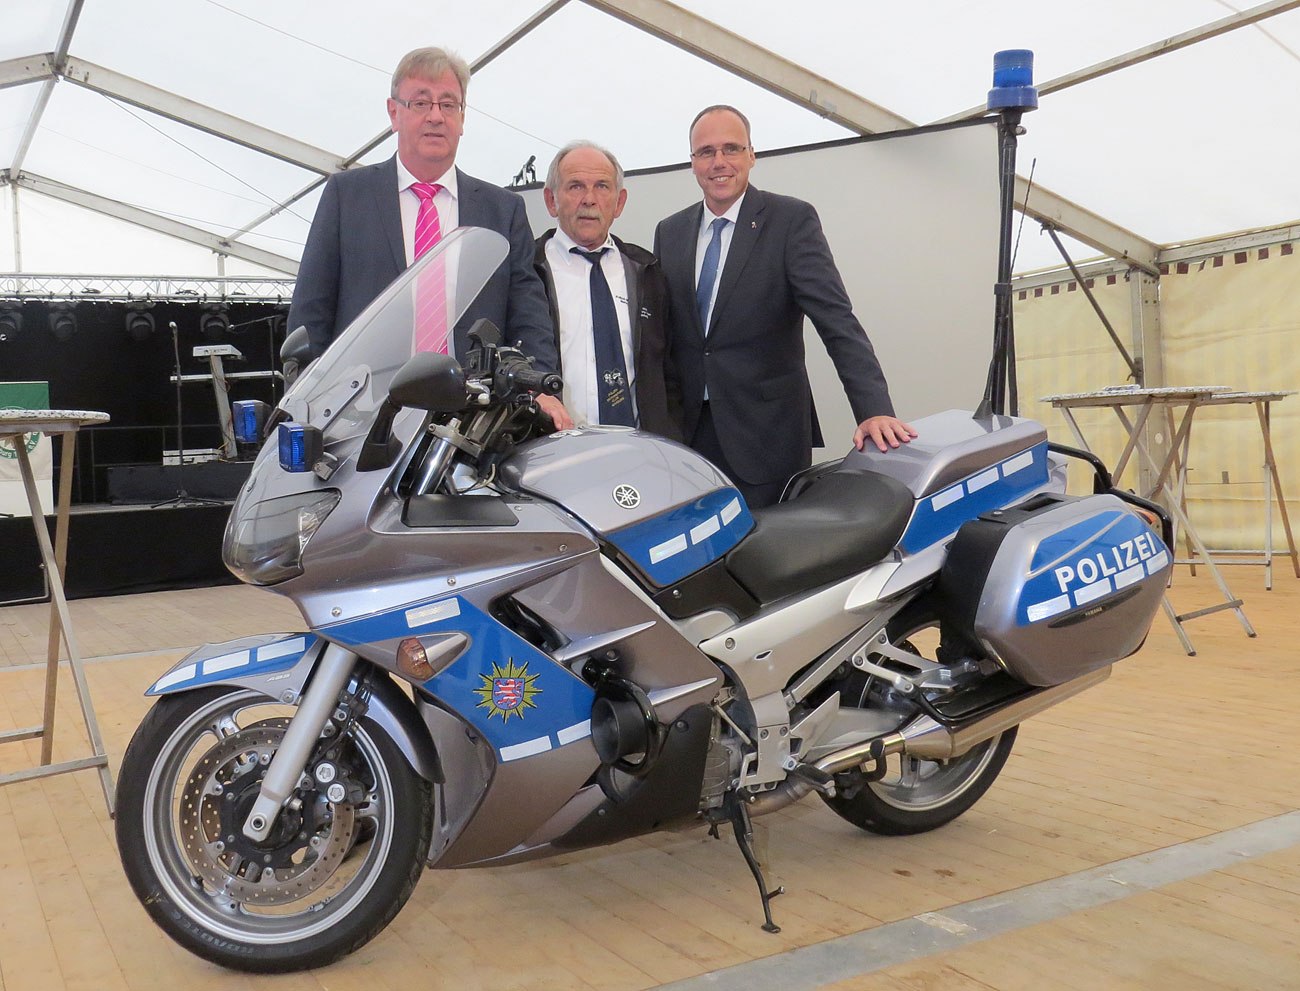 25 Jahre Polizei-Motorsport-Club Marburg - ein Geschenk von Innenminister Beuth (rechts) - eine Polizei-Yamaha, mit OB Vaupel (links) und PMC-Vorsitzender Menche